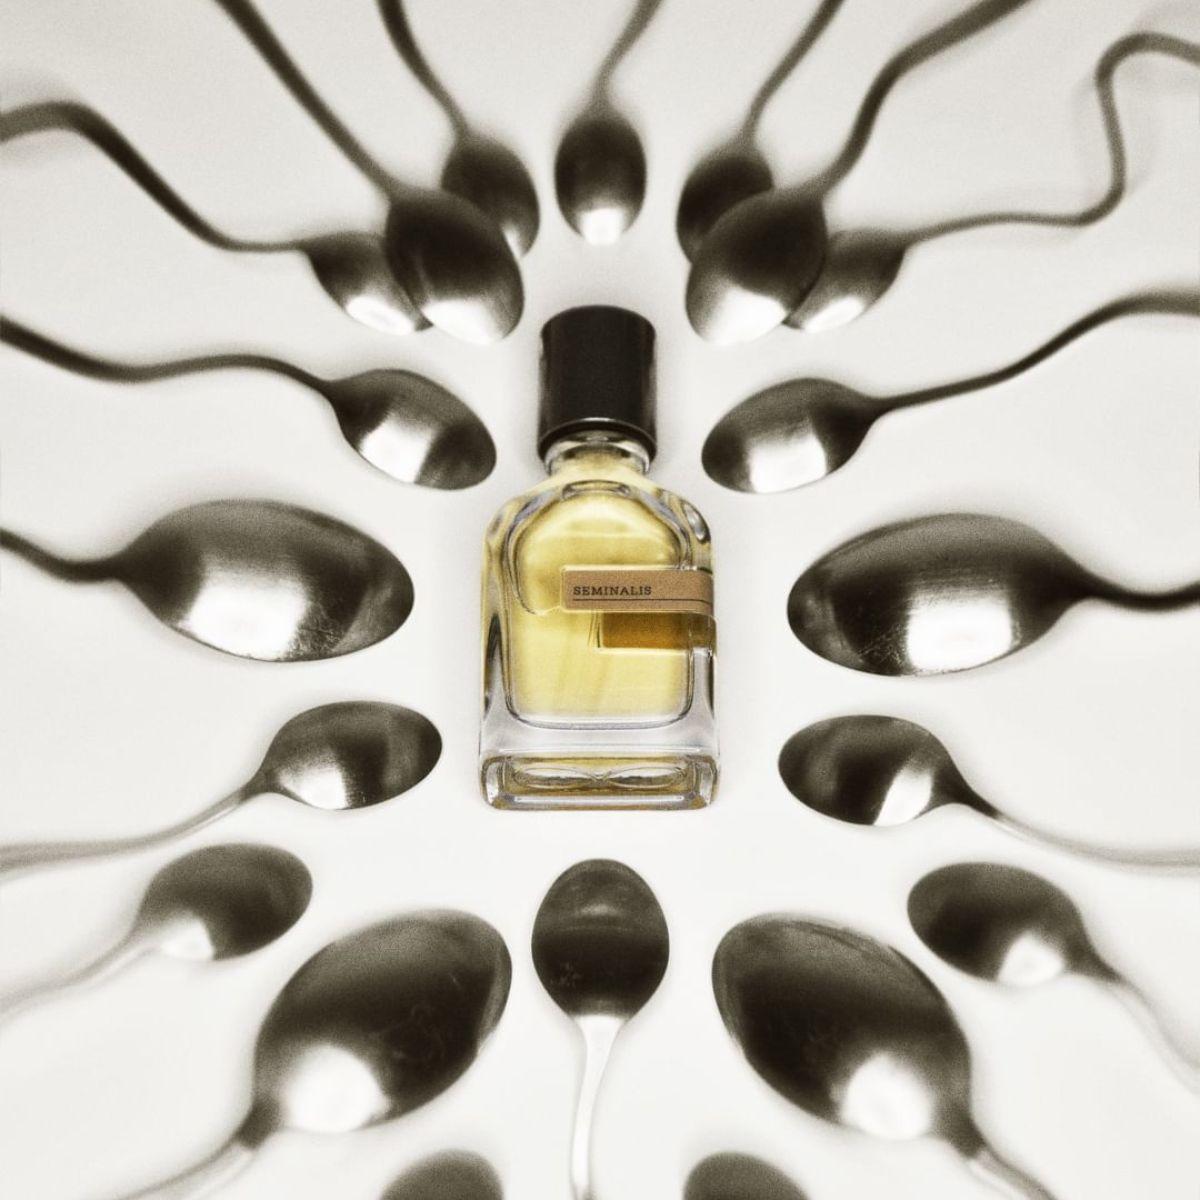 Image of Seminalis by the perfume brand Orto Parisi